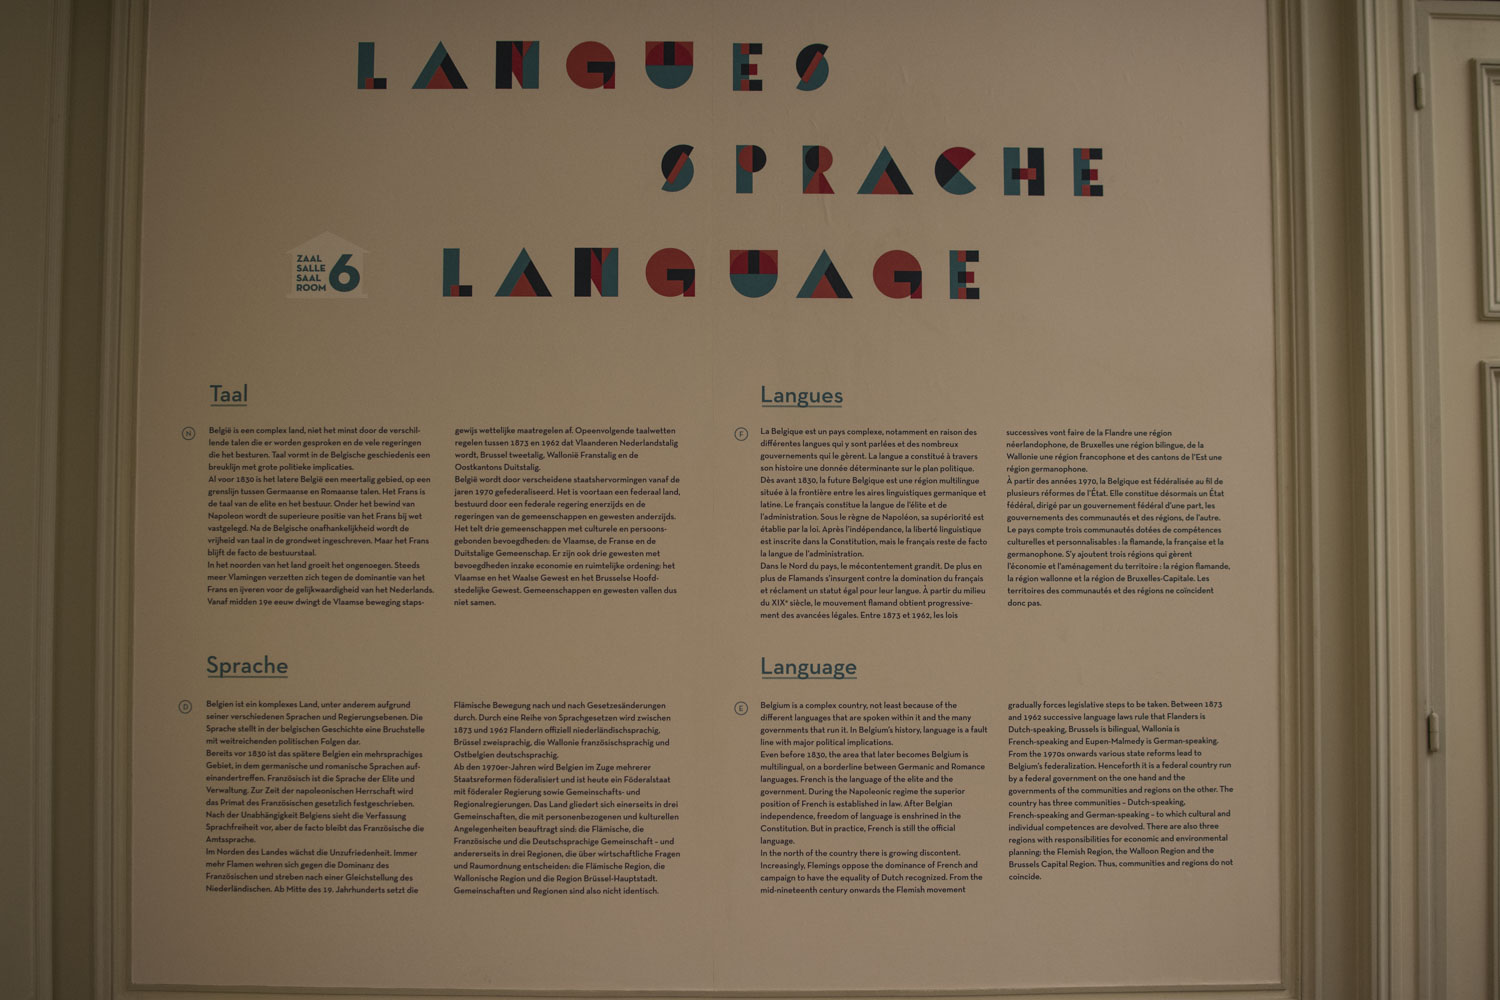 La salle des langues. Soyez attentifs, pas toujours simple de comprendre la complexité linguistique du pays